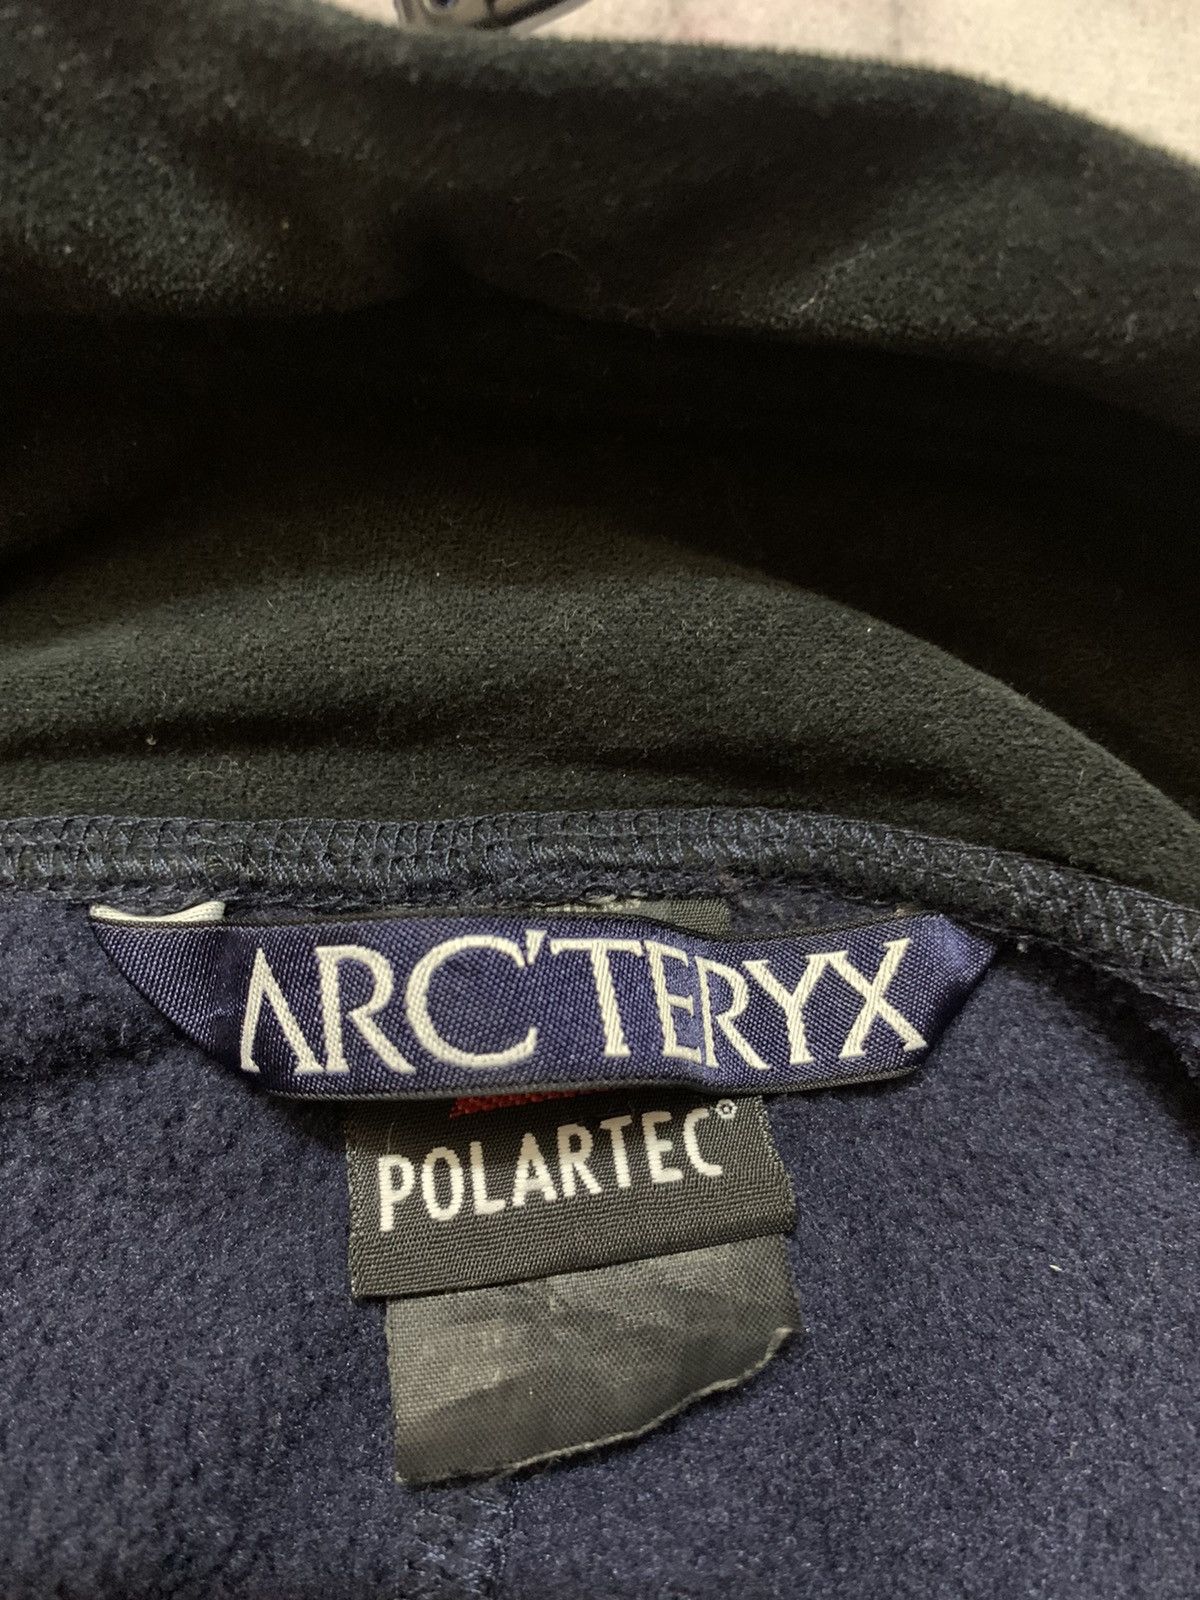 Vintage Arcteryx Polartec Fleece Jacket - 7